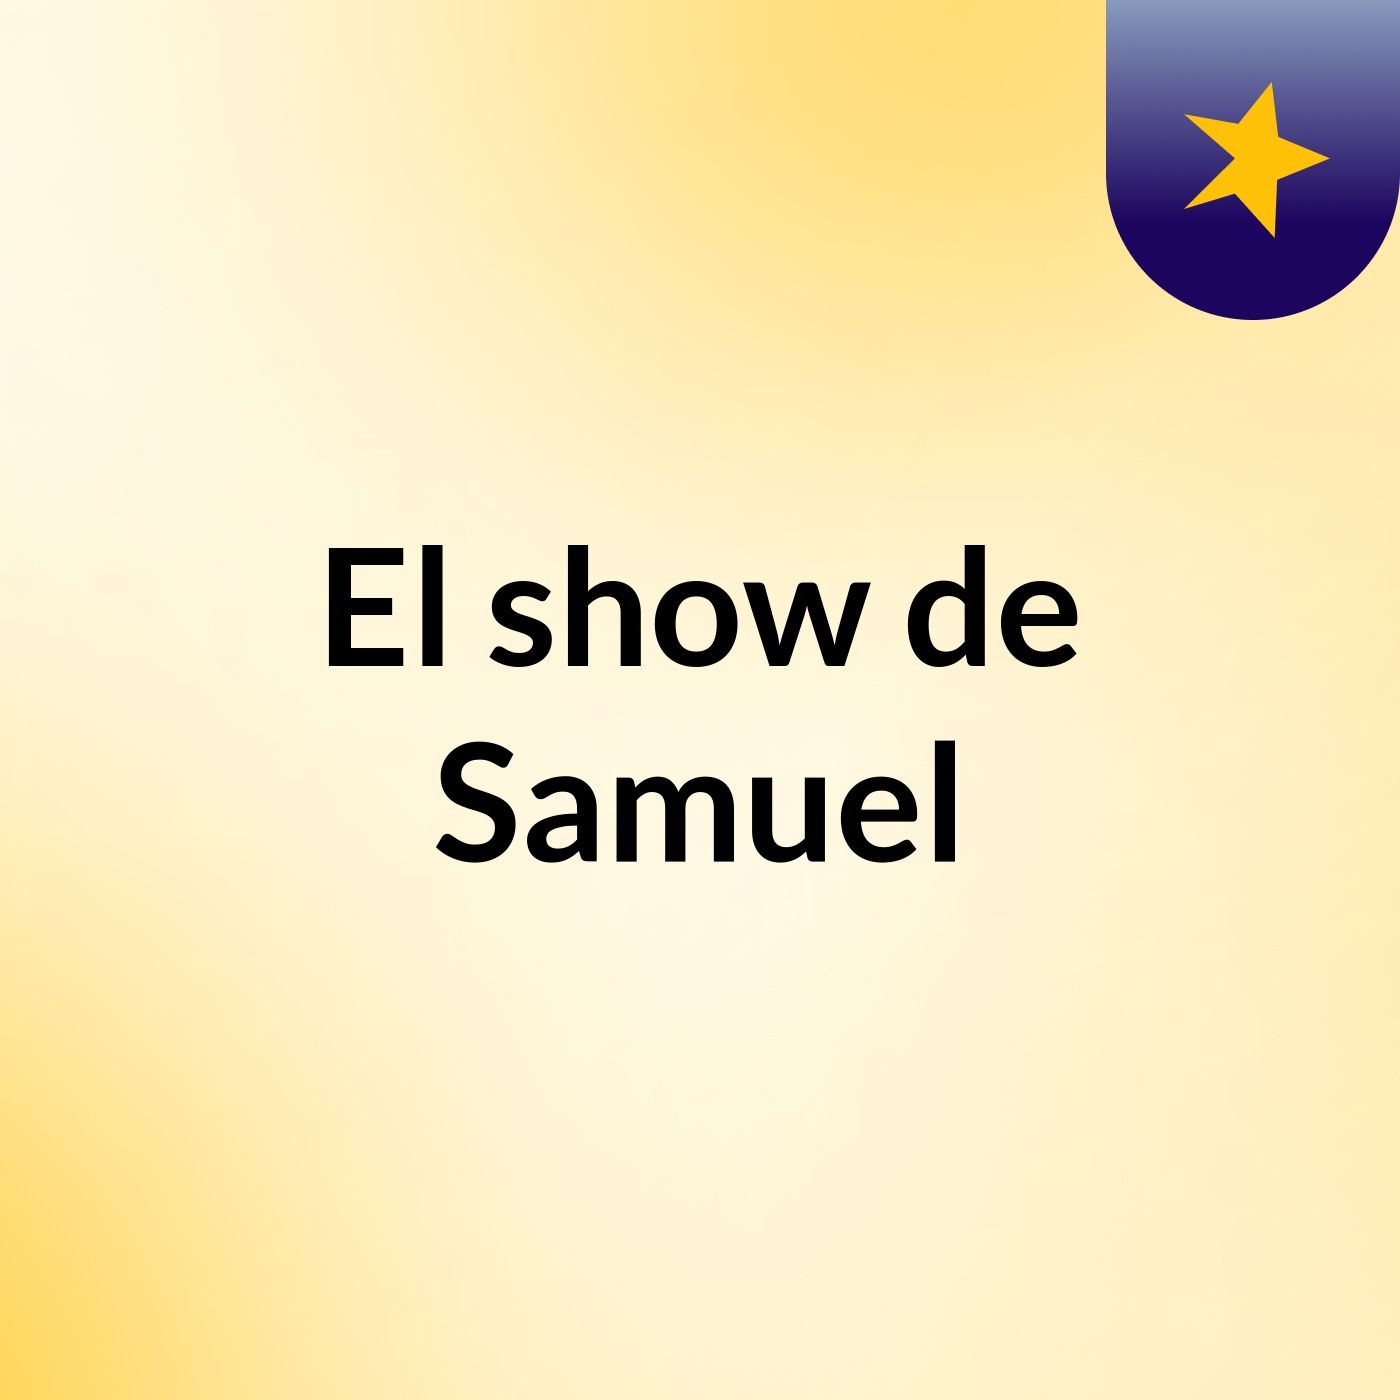 El show de Samuel